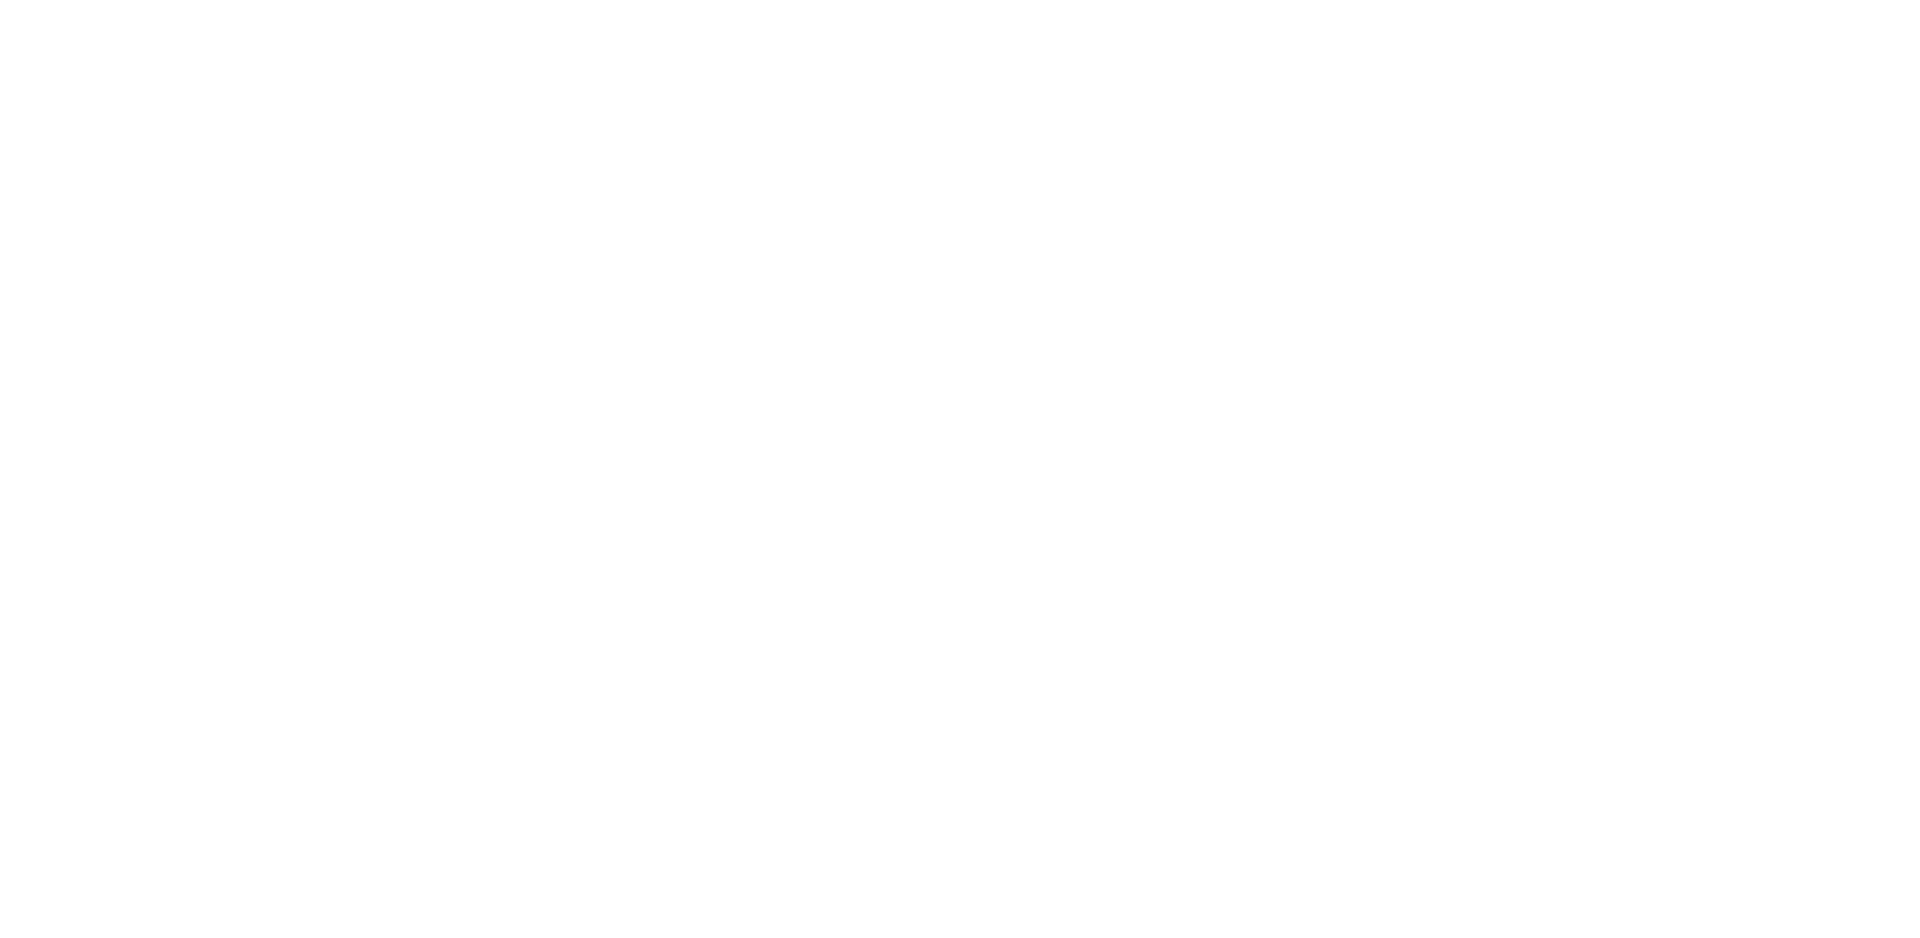 U-Start Ventures